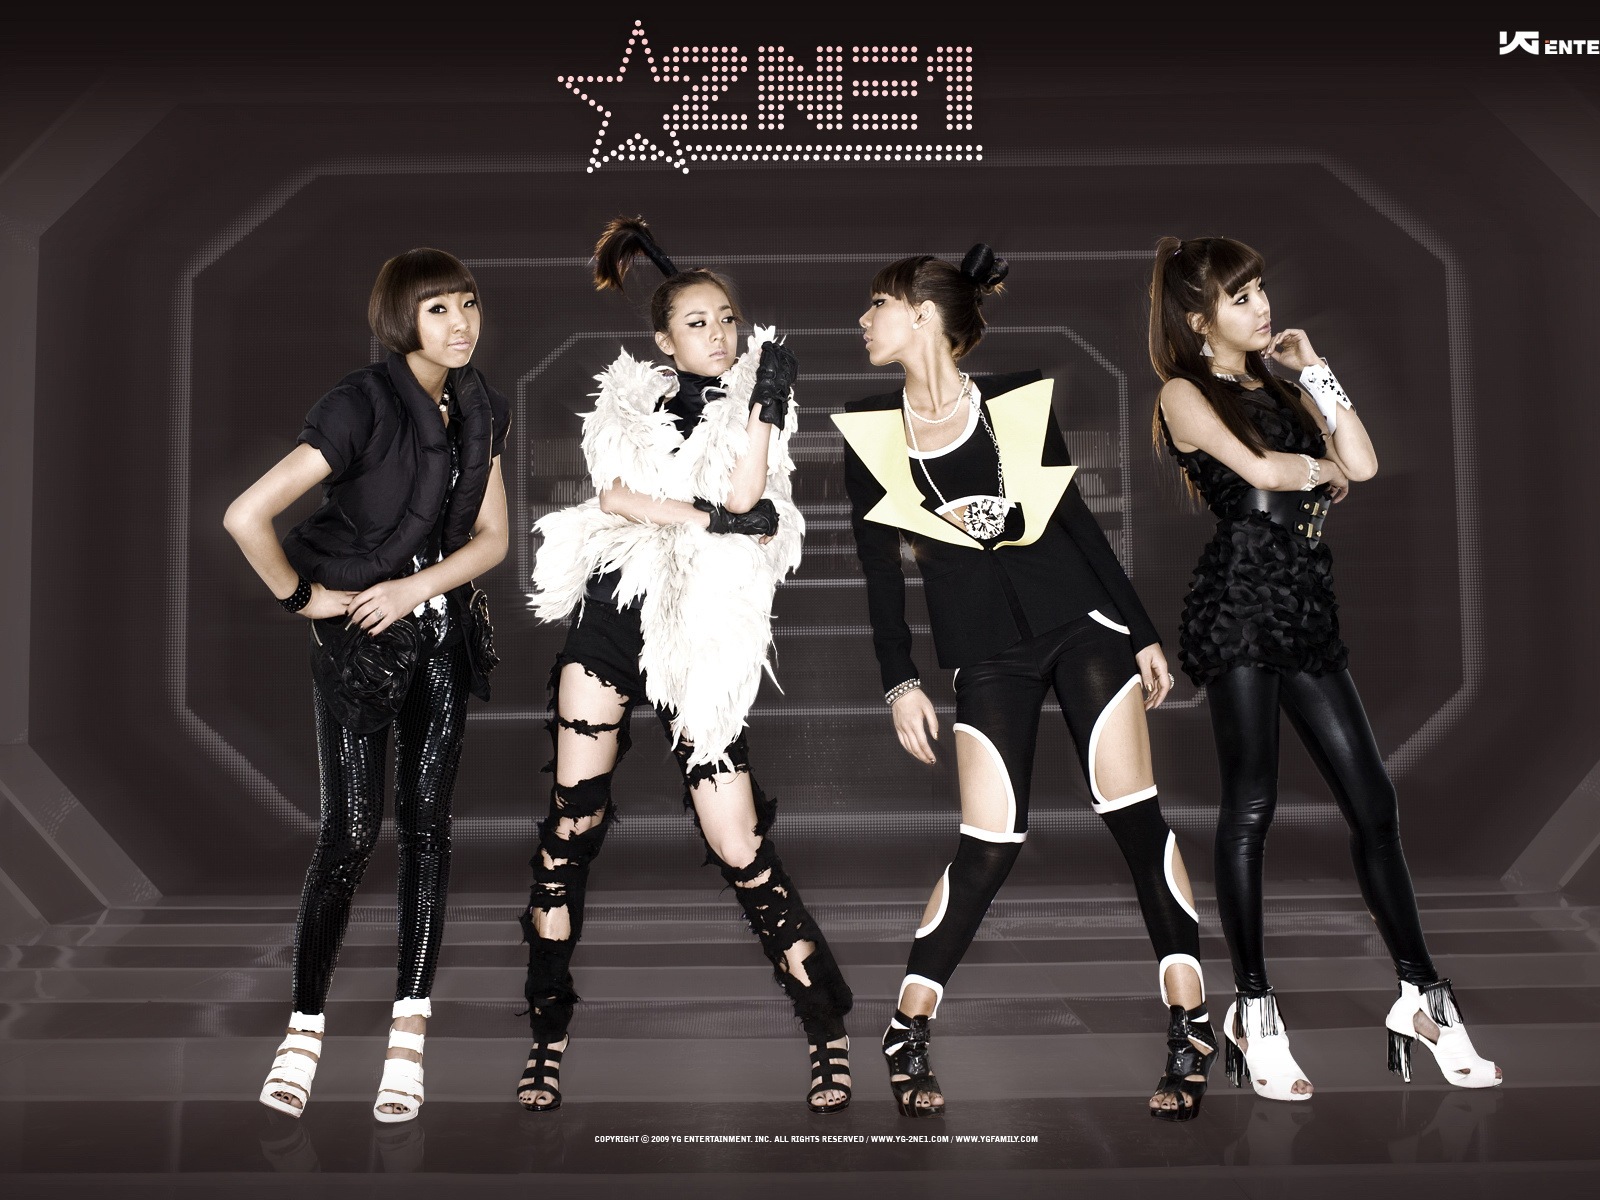 韩国音乐女孩组合 2NE1 高清壁纸11 - 1600x1200